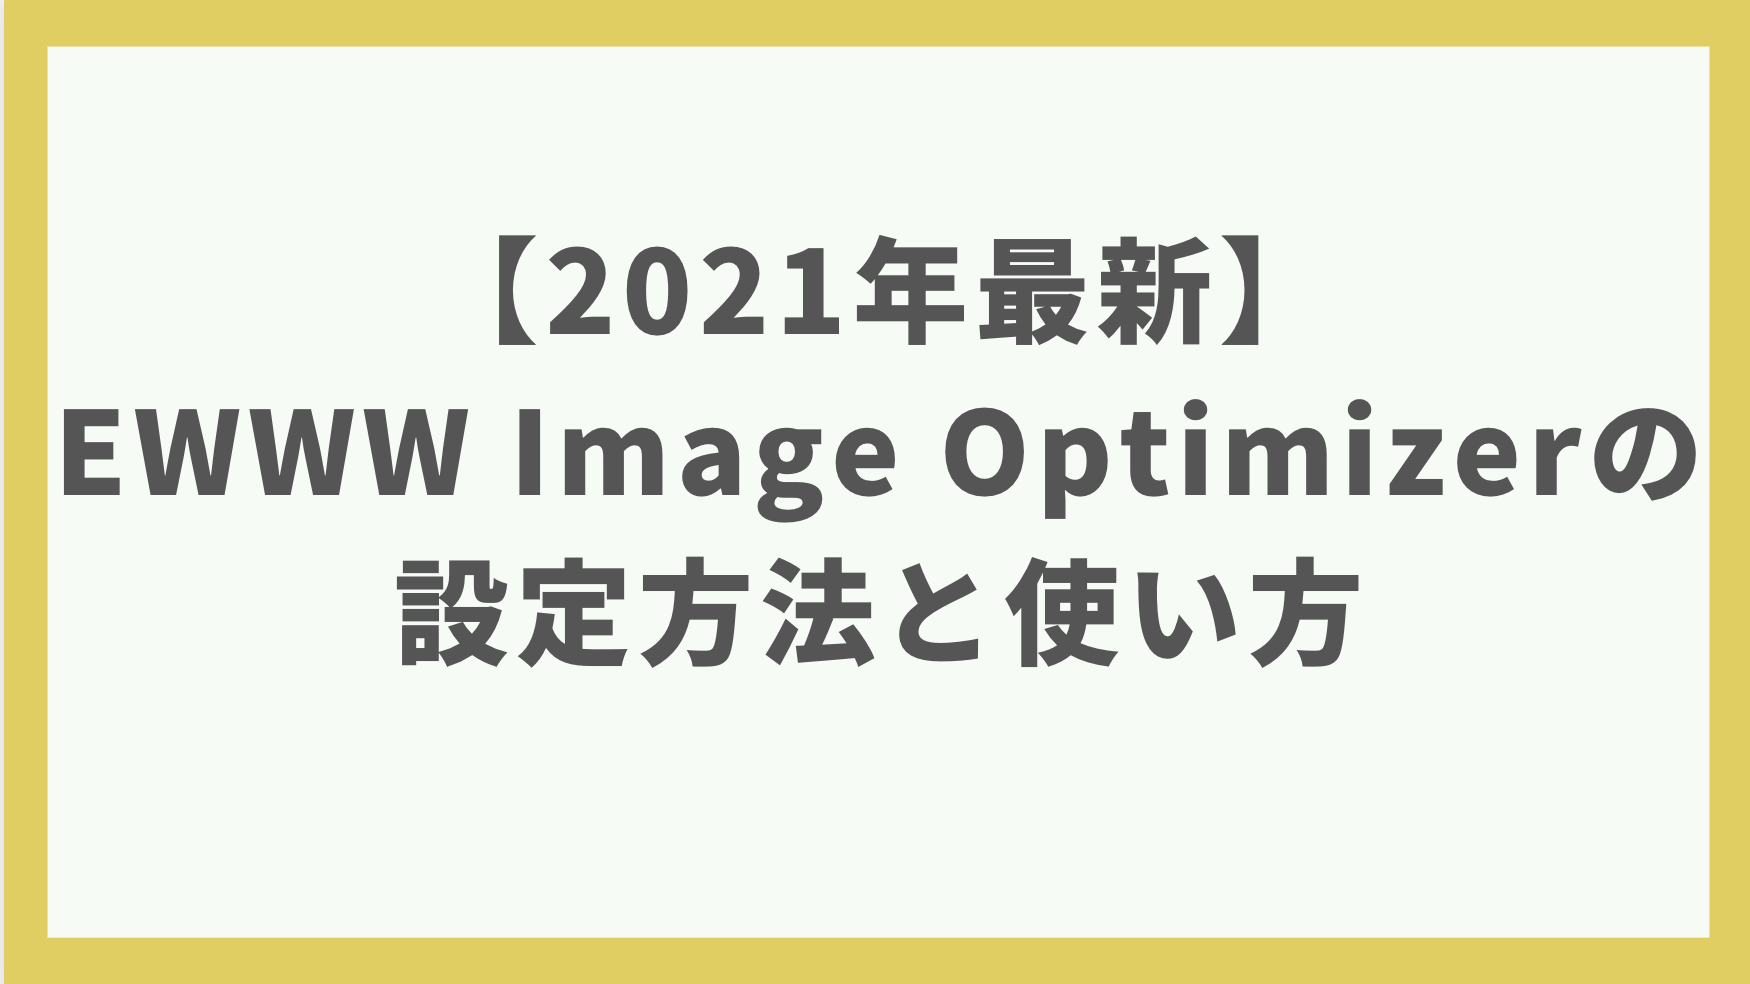 【2021年最新】EWWW Image Optimizerの最新設定方法と使い方【画像最適化プラグイン】